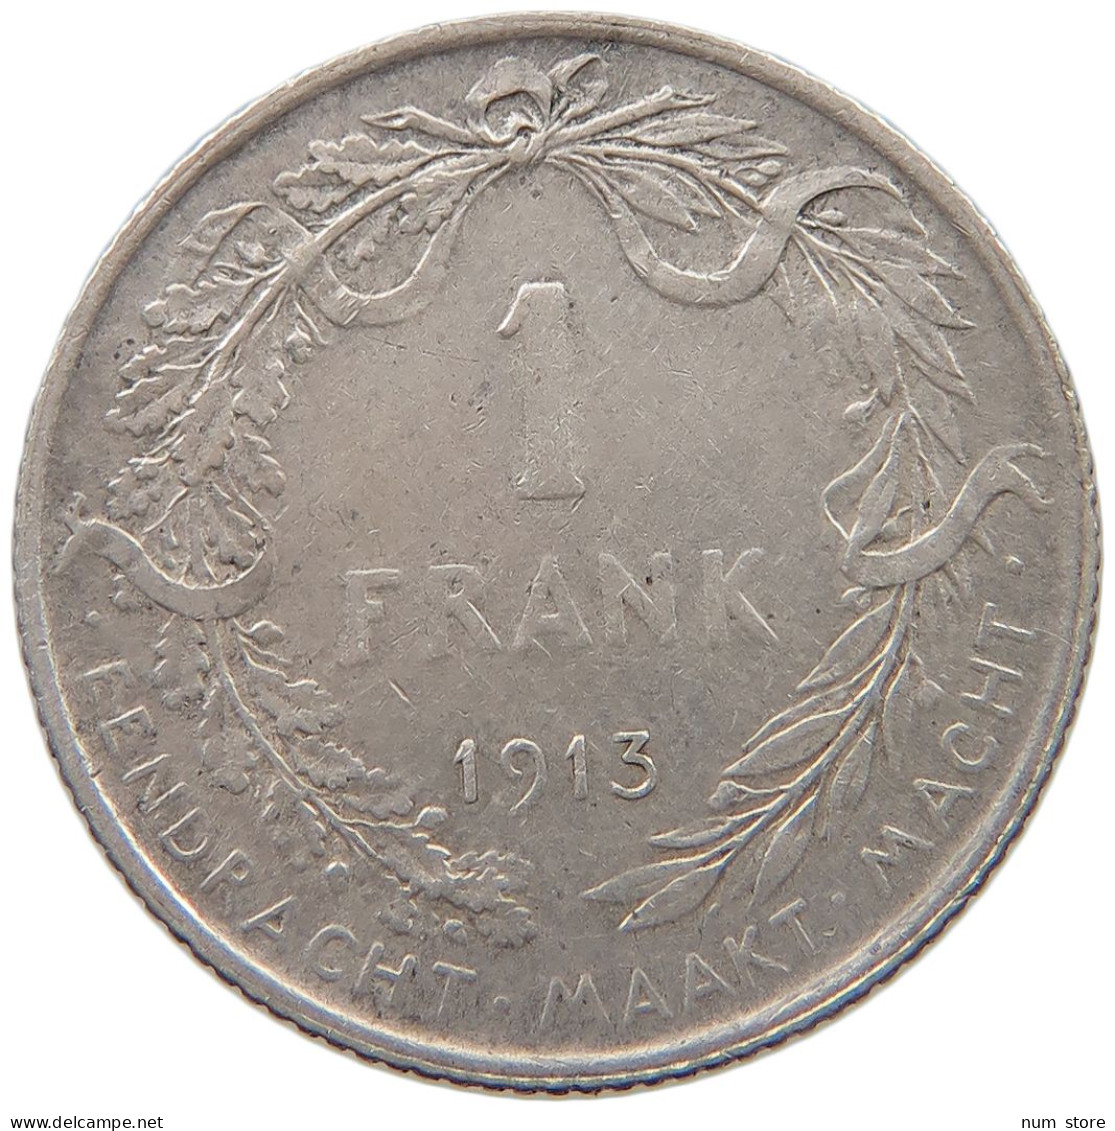 BELGIUM FRANC 1913 Albert I. 1909-1934 #c007 0451 - 1 Frank